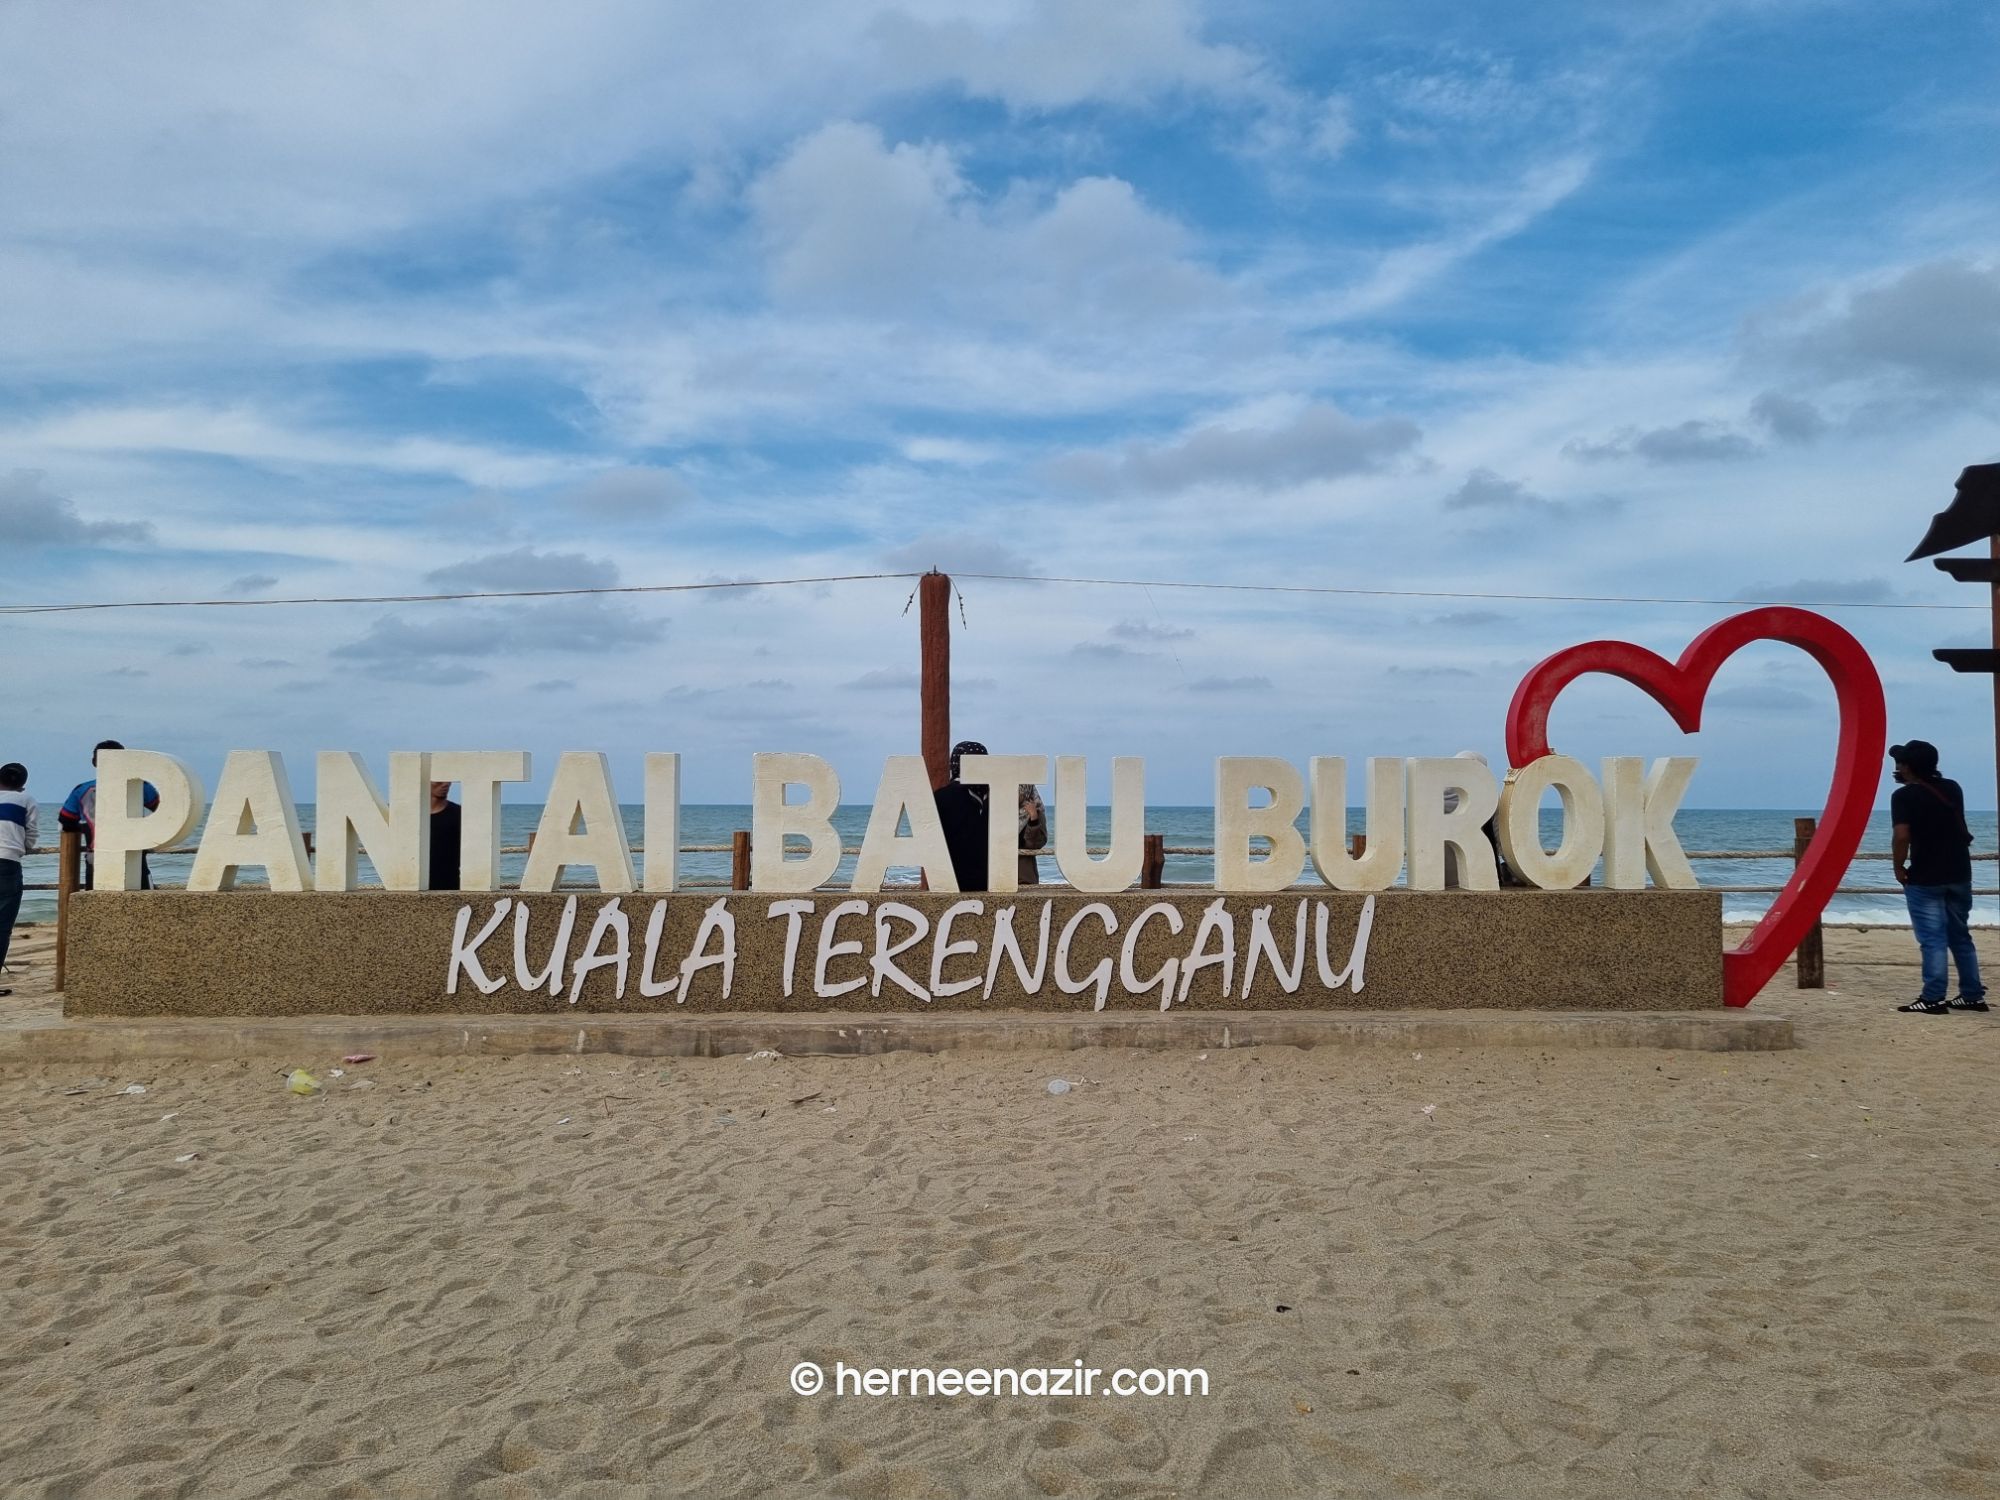 Wordless Wednesday – Pantai Batu Burok Kuala Terengganu